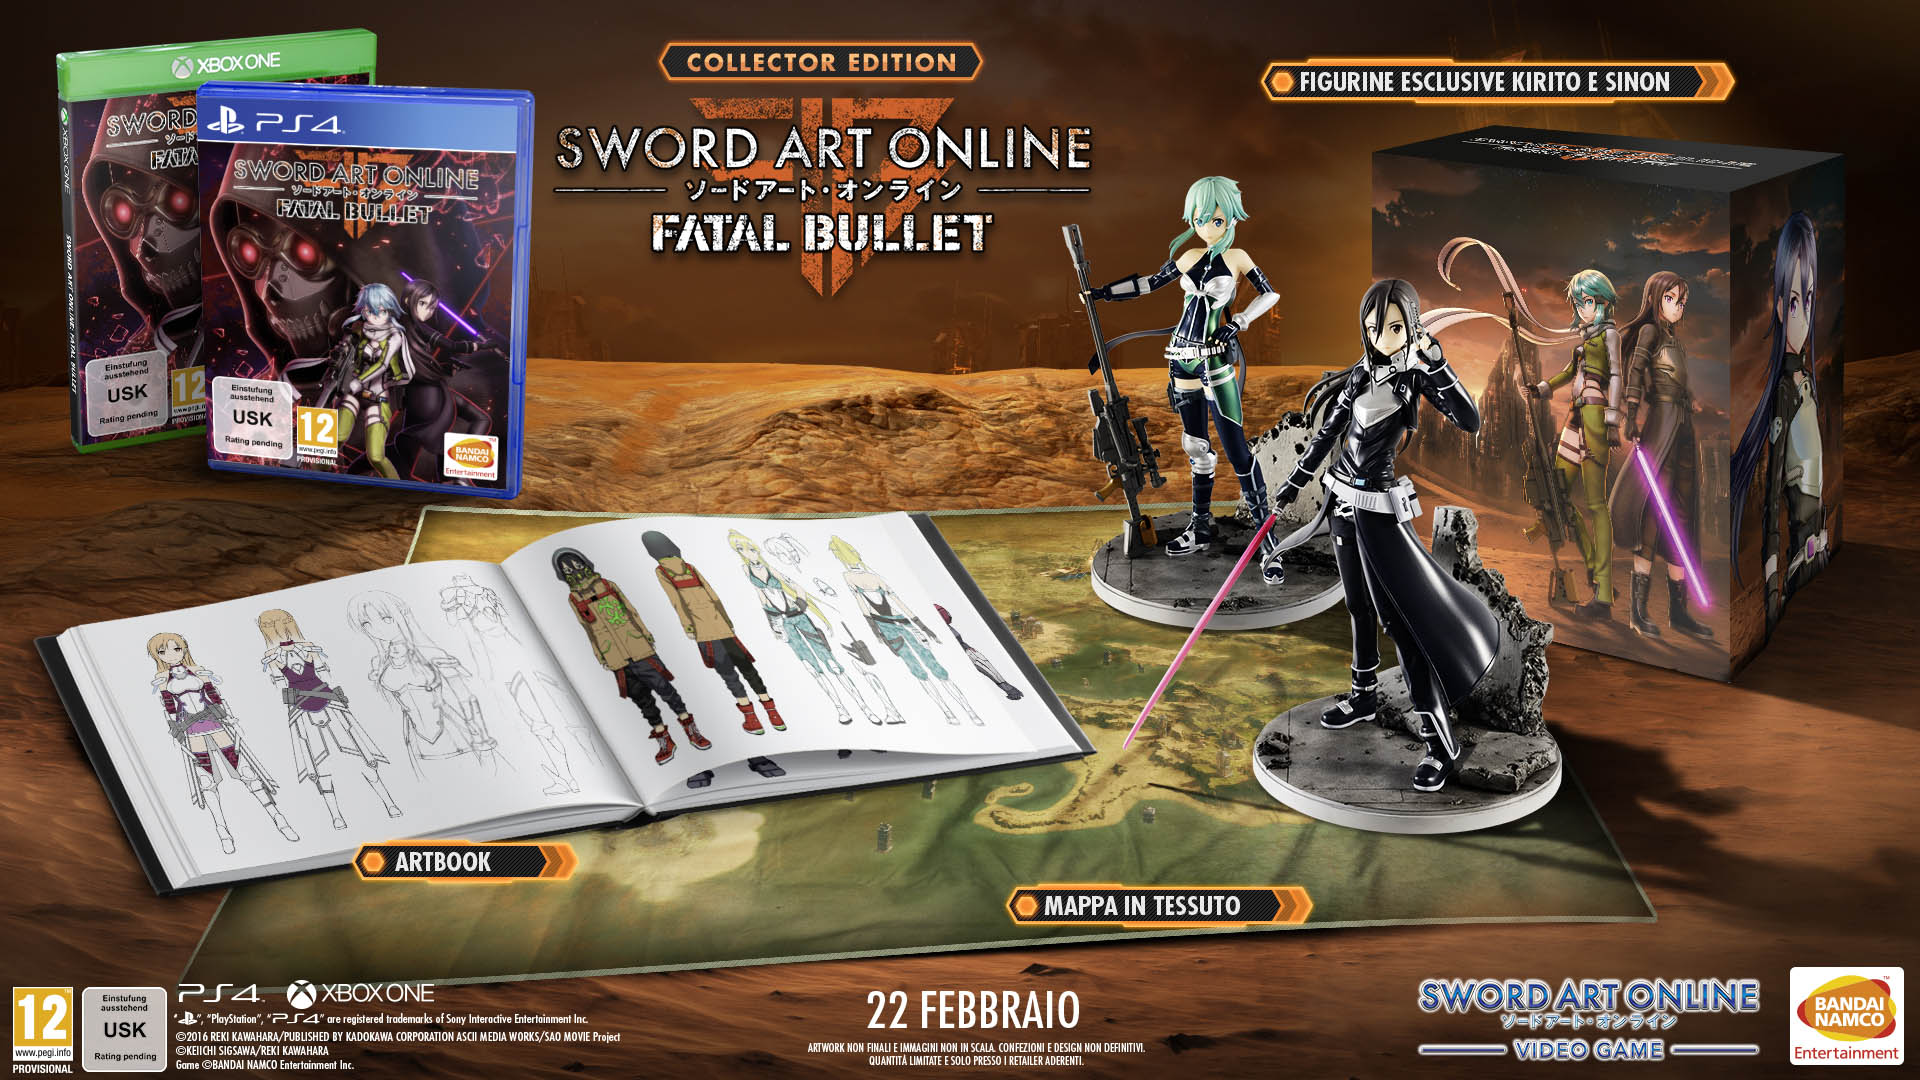 Svelata la data e la Limited di Sword Art Online Fatal Bullet